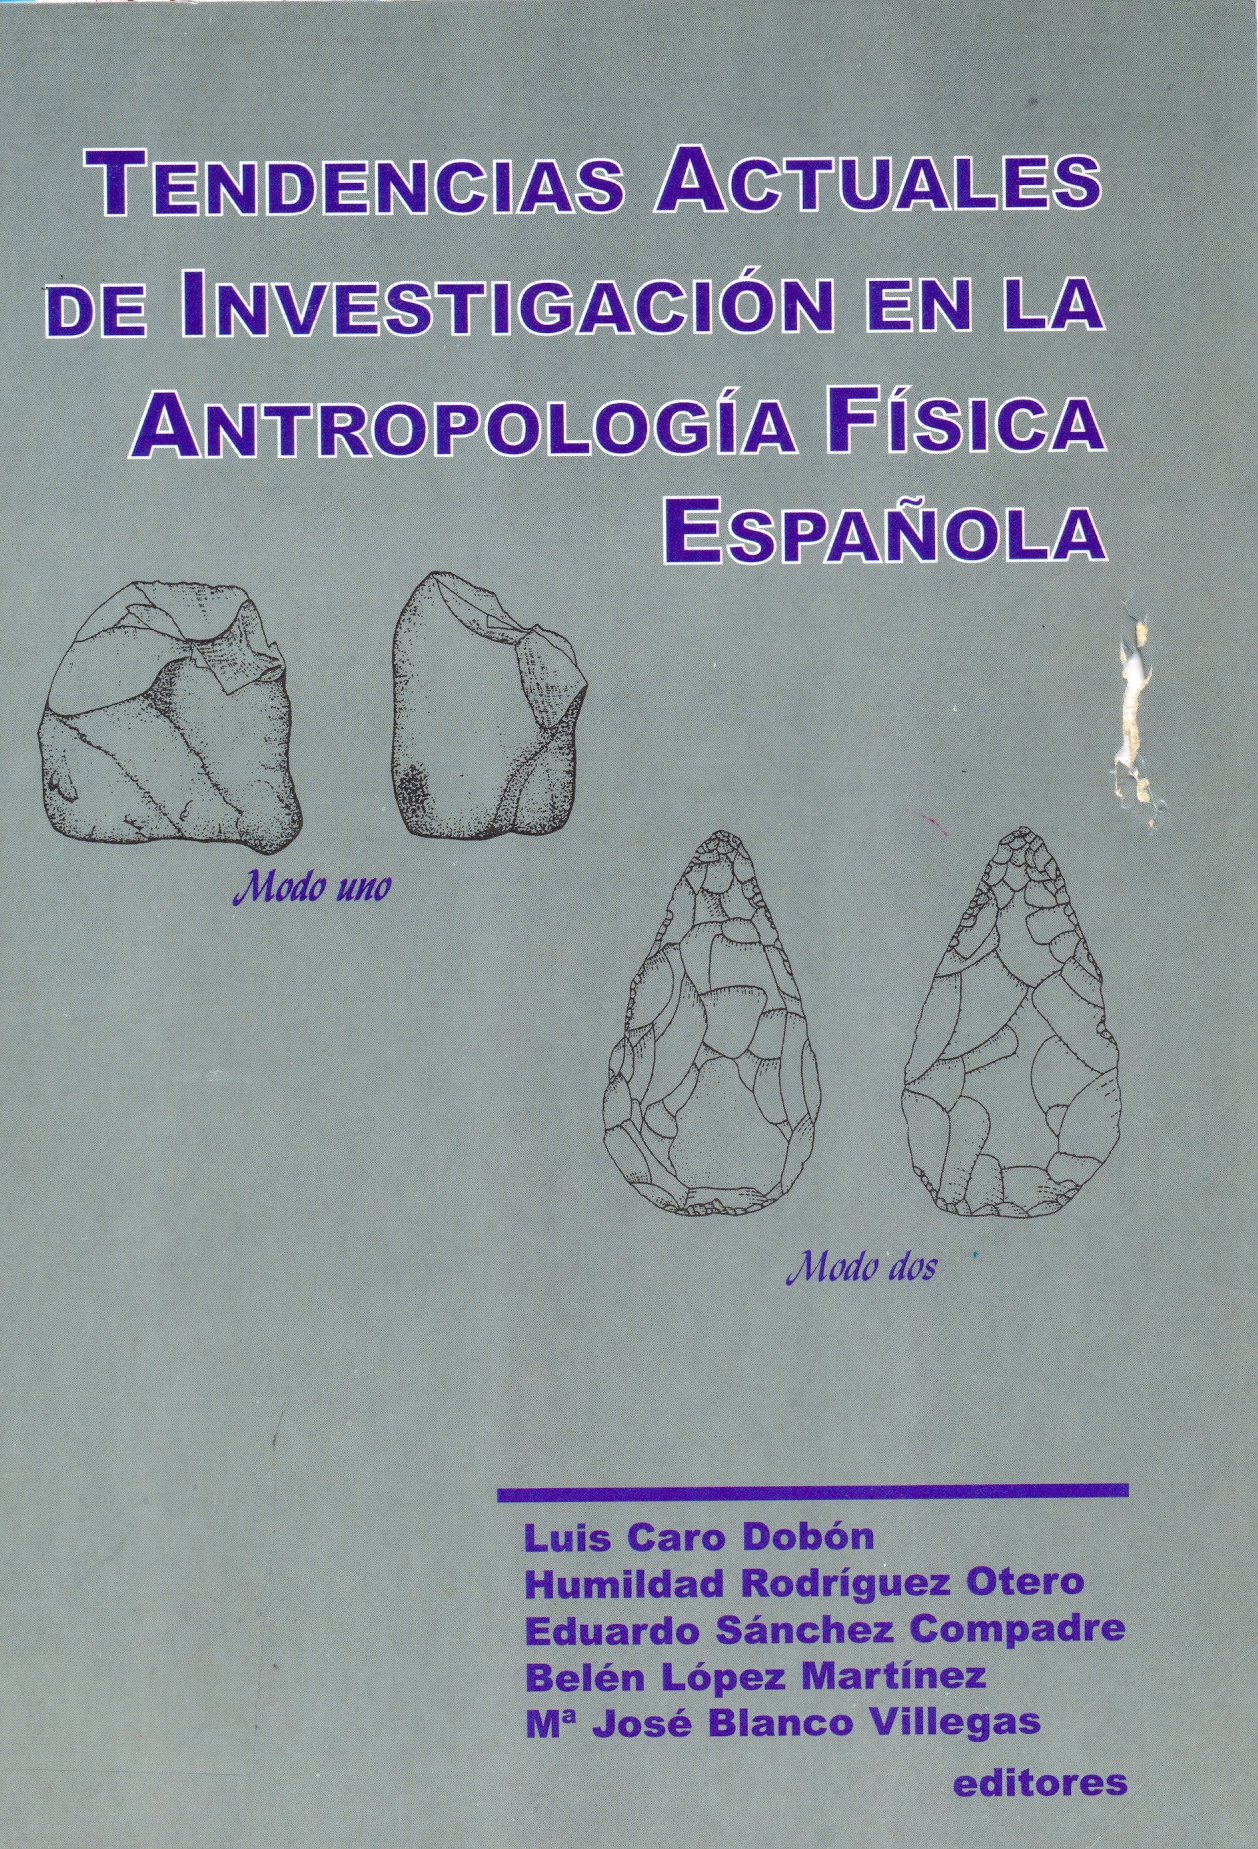 Imagen de portada del libro Tendencias actuales de investigación en la antropología física española